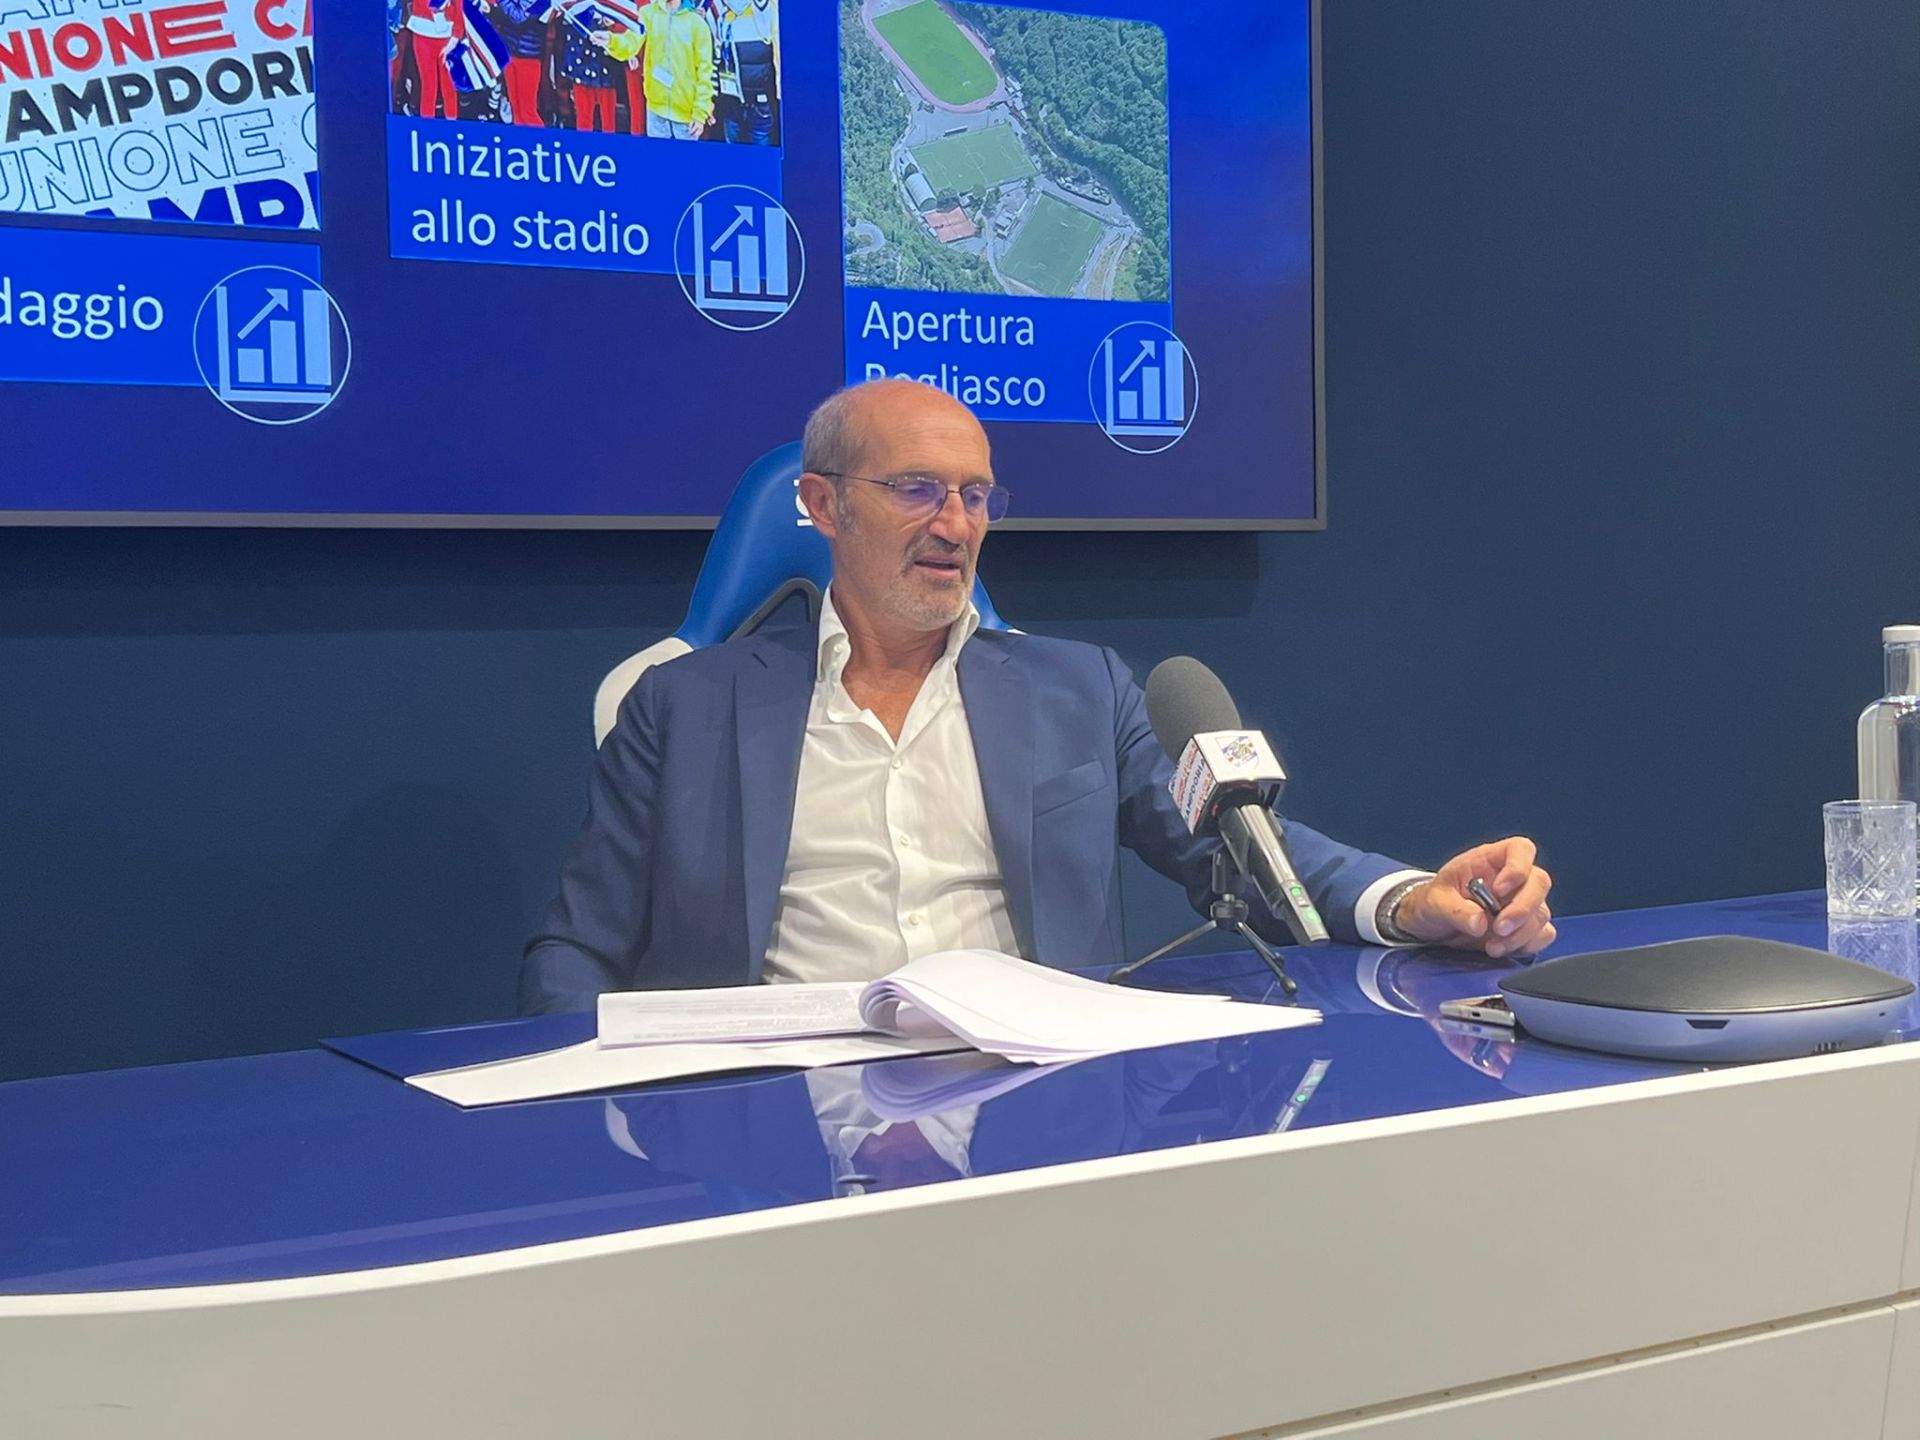 Sampdoria, Msc Crociere è lo sponsor delle maglie pre-partita 2022/23